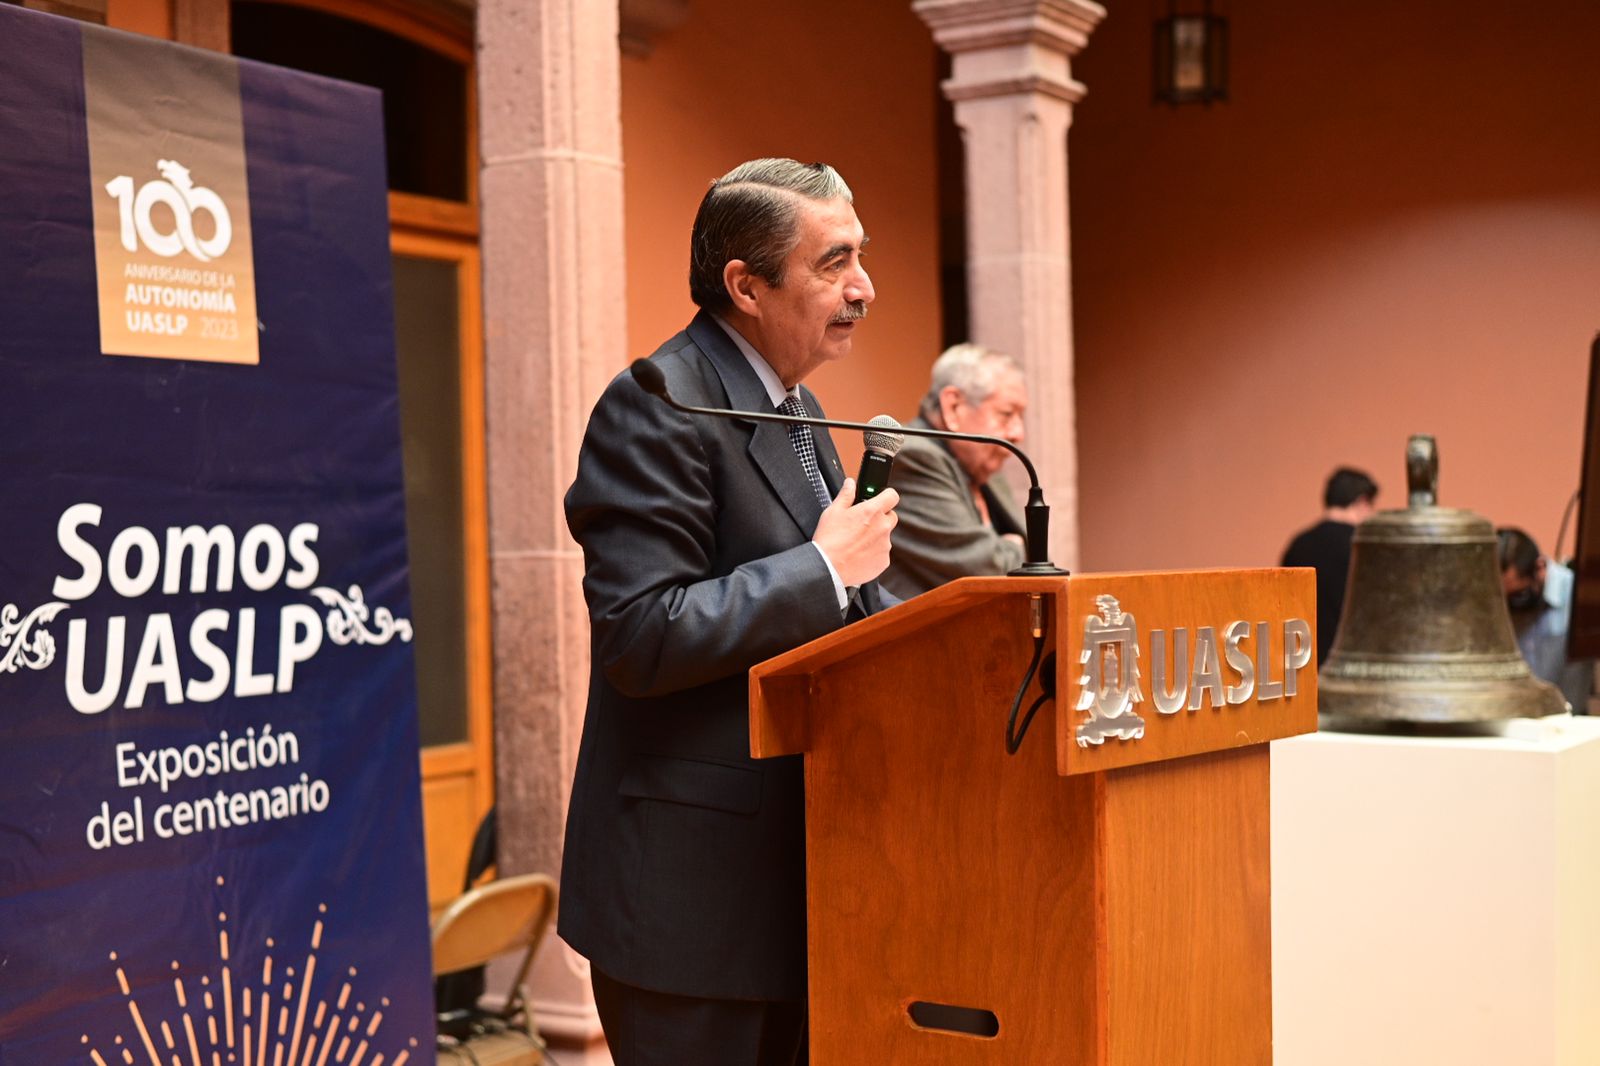 La inauguración de la exposición estuvo a cargo el doctor Alejandro Javier Zermeño Guerra, rector de la UASLP